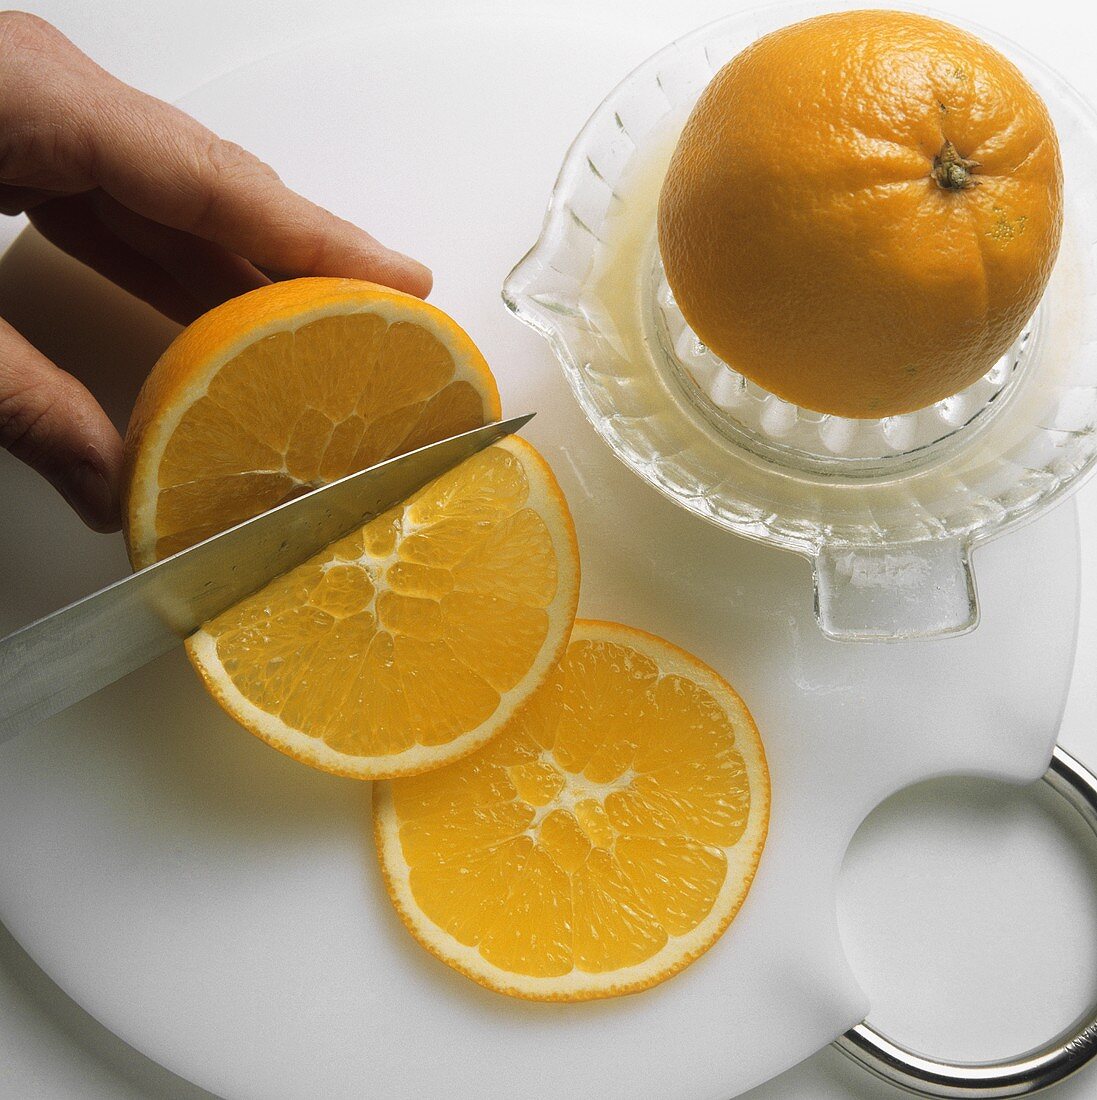 Squeezing orange half and cutting orange into slices